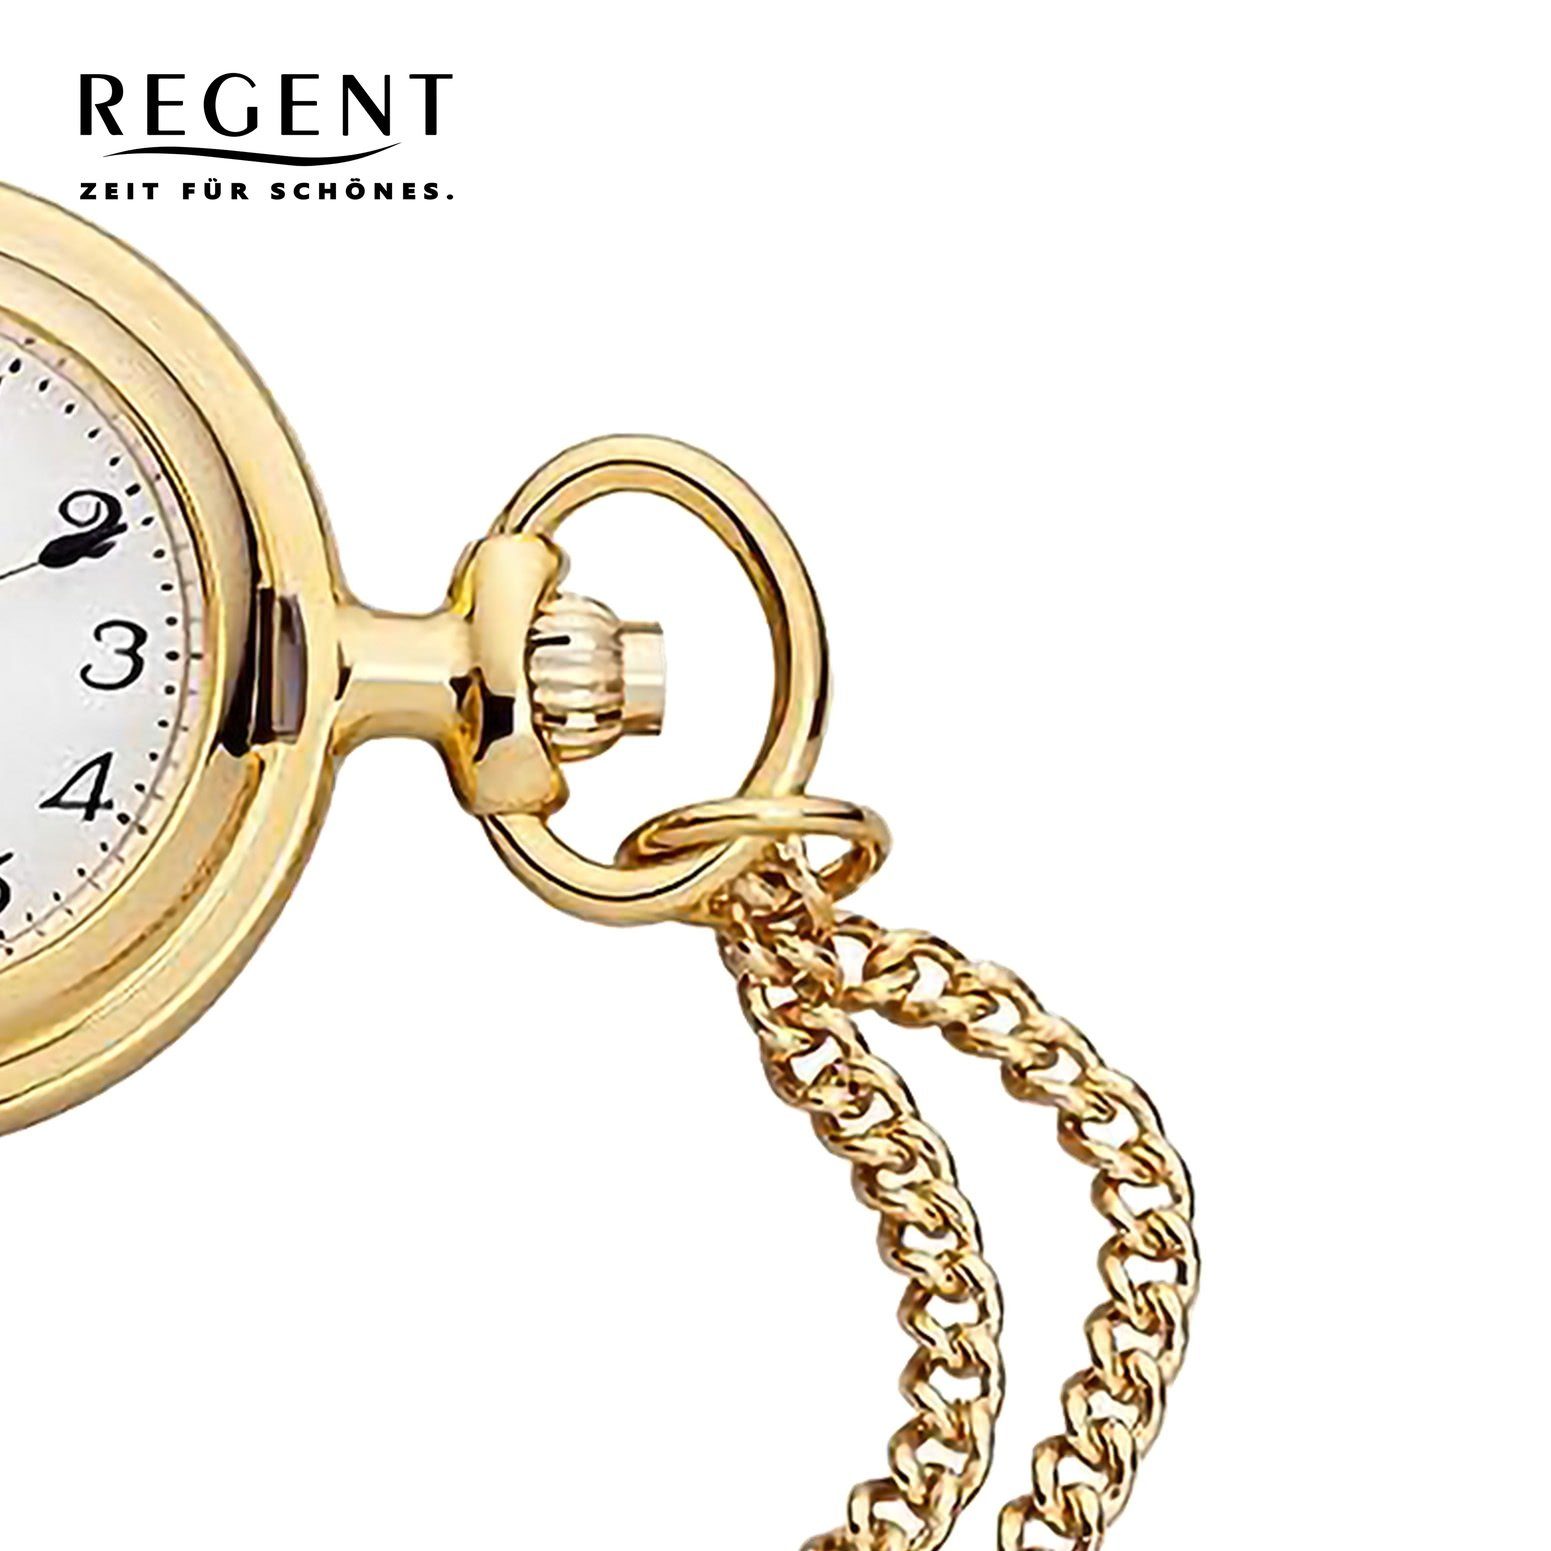 Taschenuhr Regent Taschenuhr Regent Uhrzeit extra (ca. (Analoguhr), 26mm), Analog rund, Metall, Gehäuse, Elegant, Herren groß Taschenuhr Herren